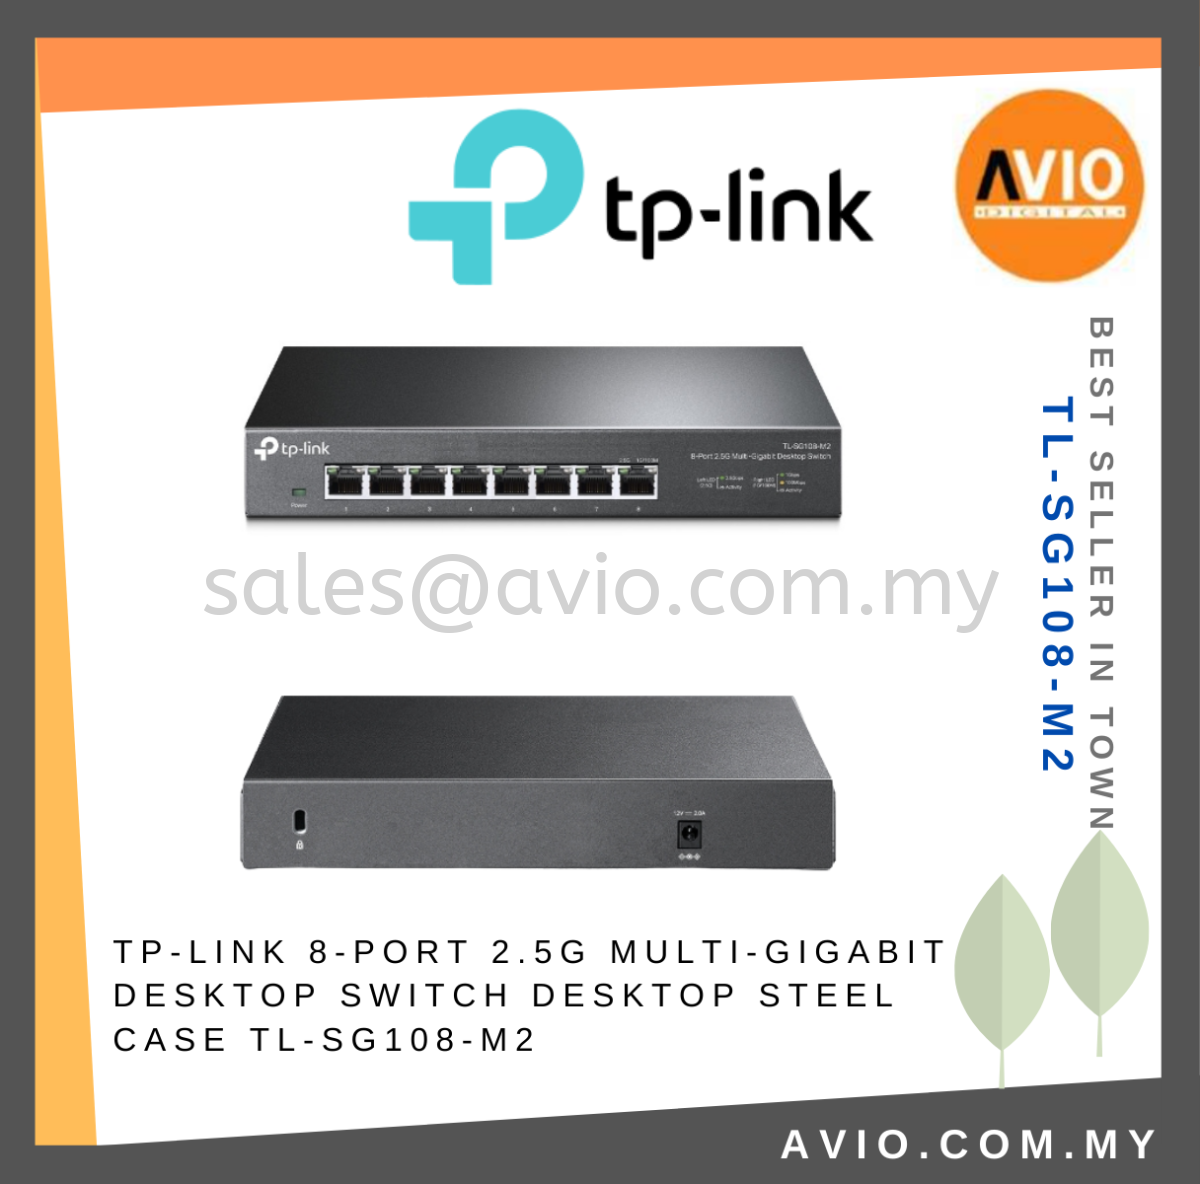 TP-LINK 8-Port Gigabit Desktop Switch in Black